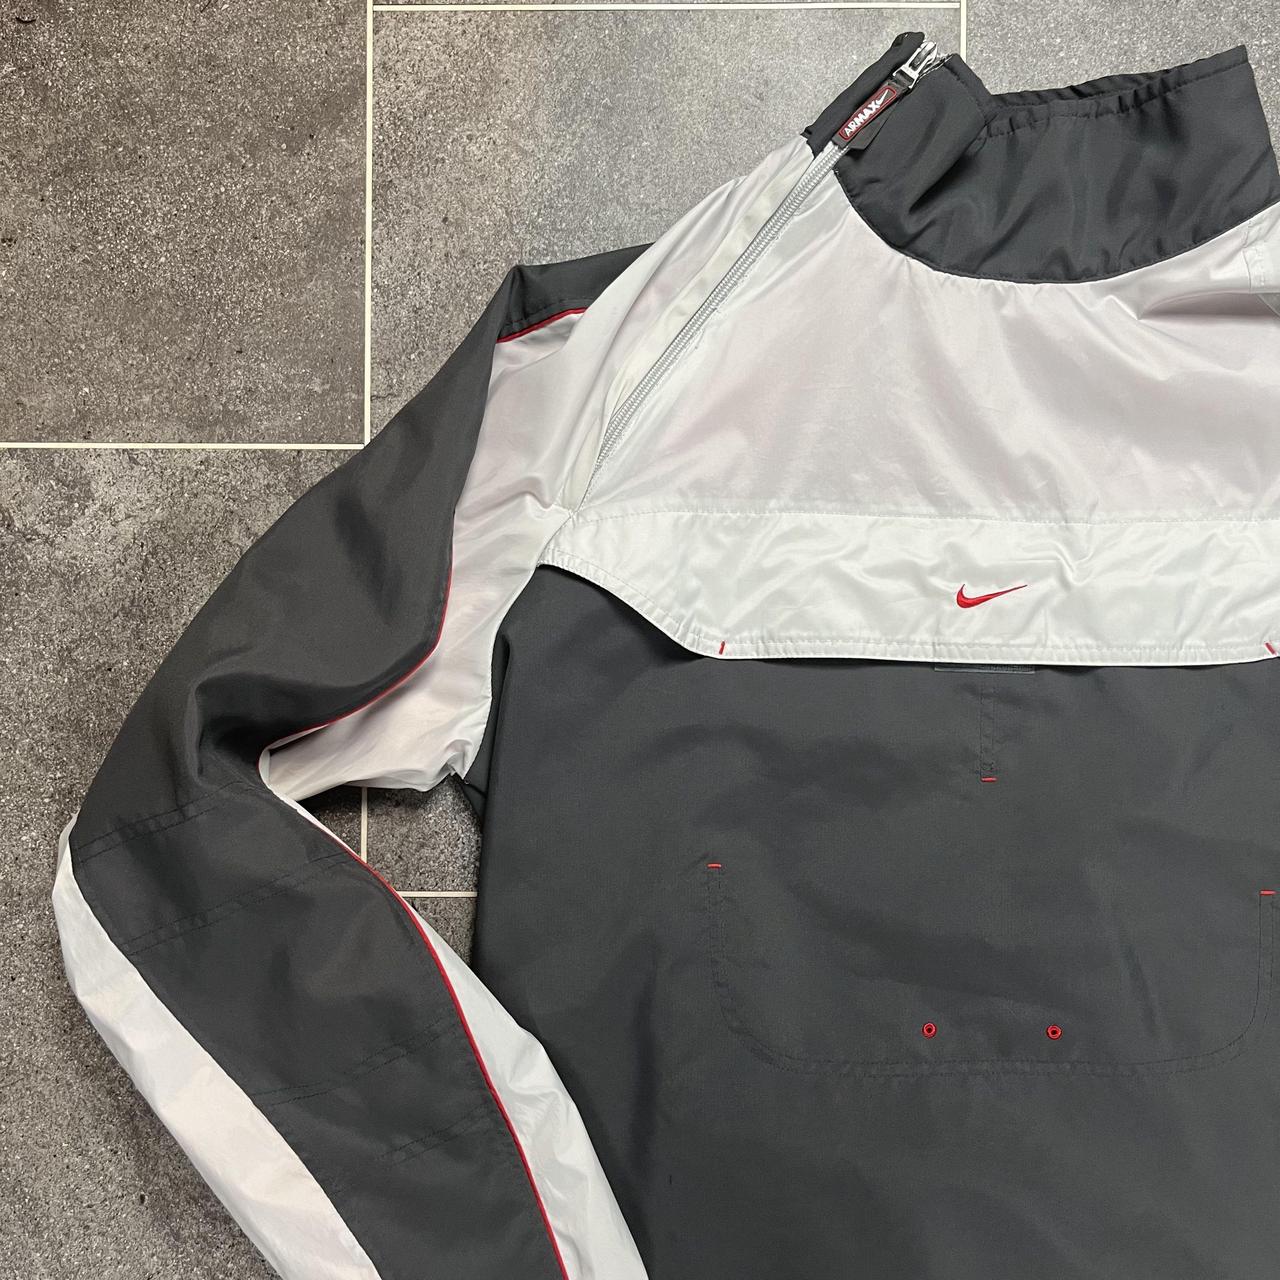 Vintage Nike air max pullover mock neck jacket- size... - Depop